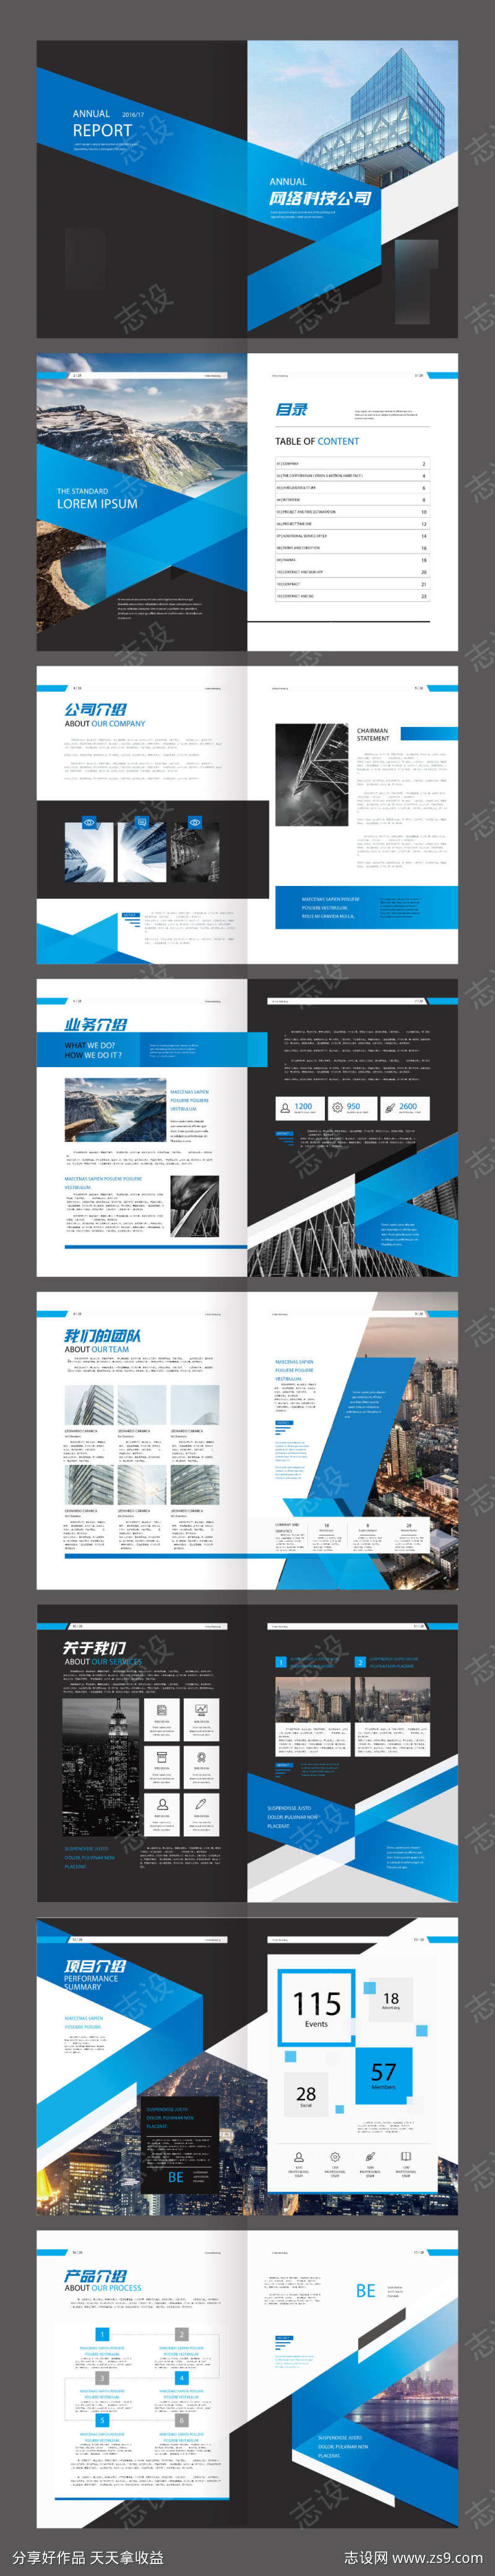 蓝色都市建筑高端企业画册